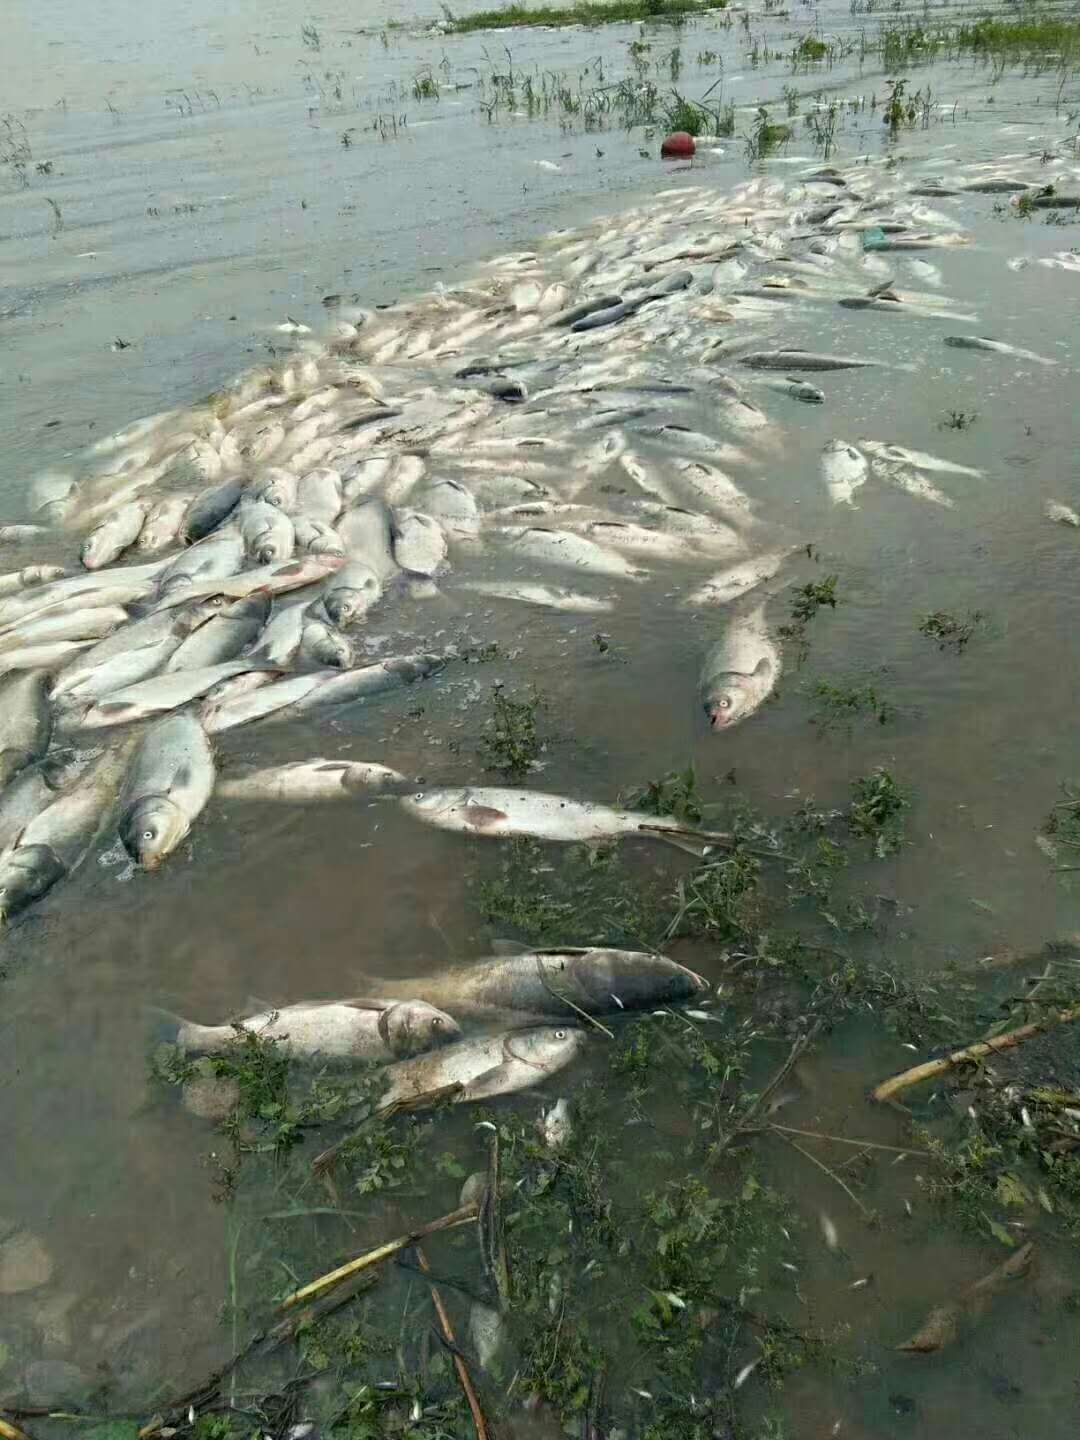 峡山水库死鱼事件图片